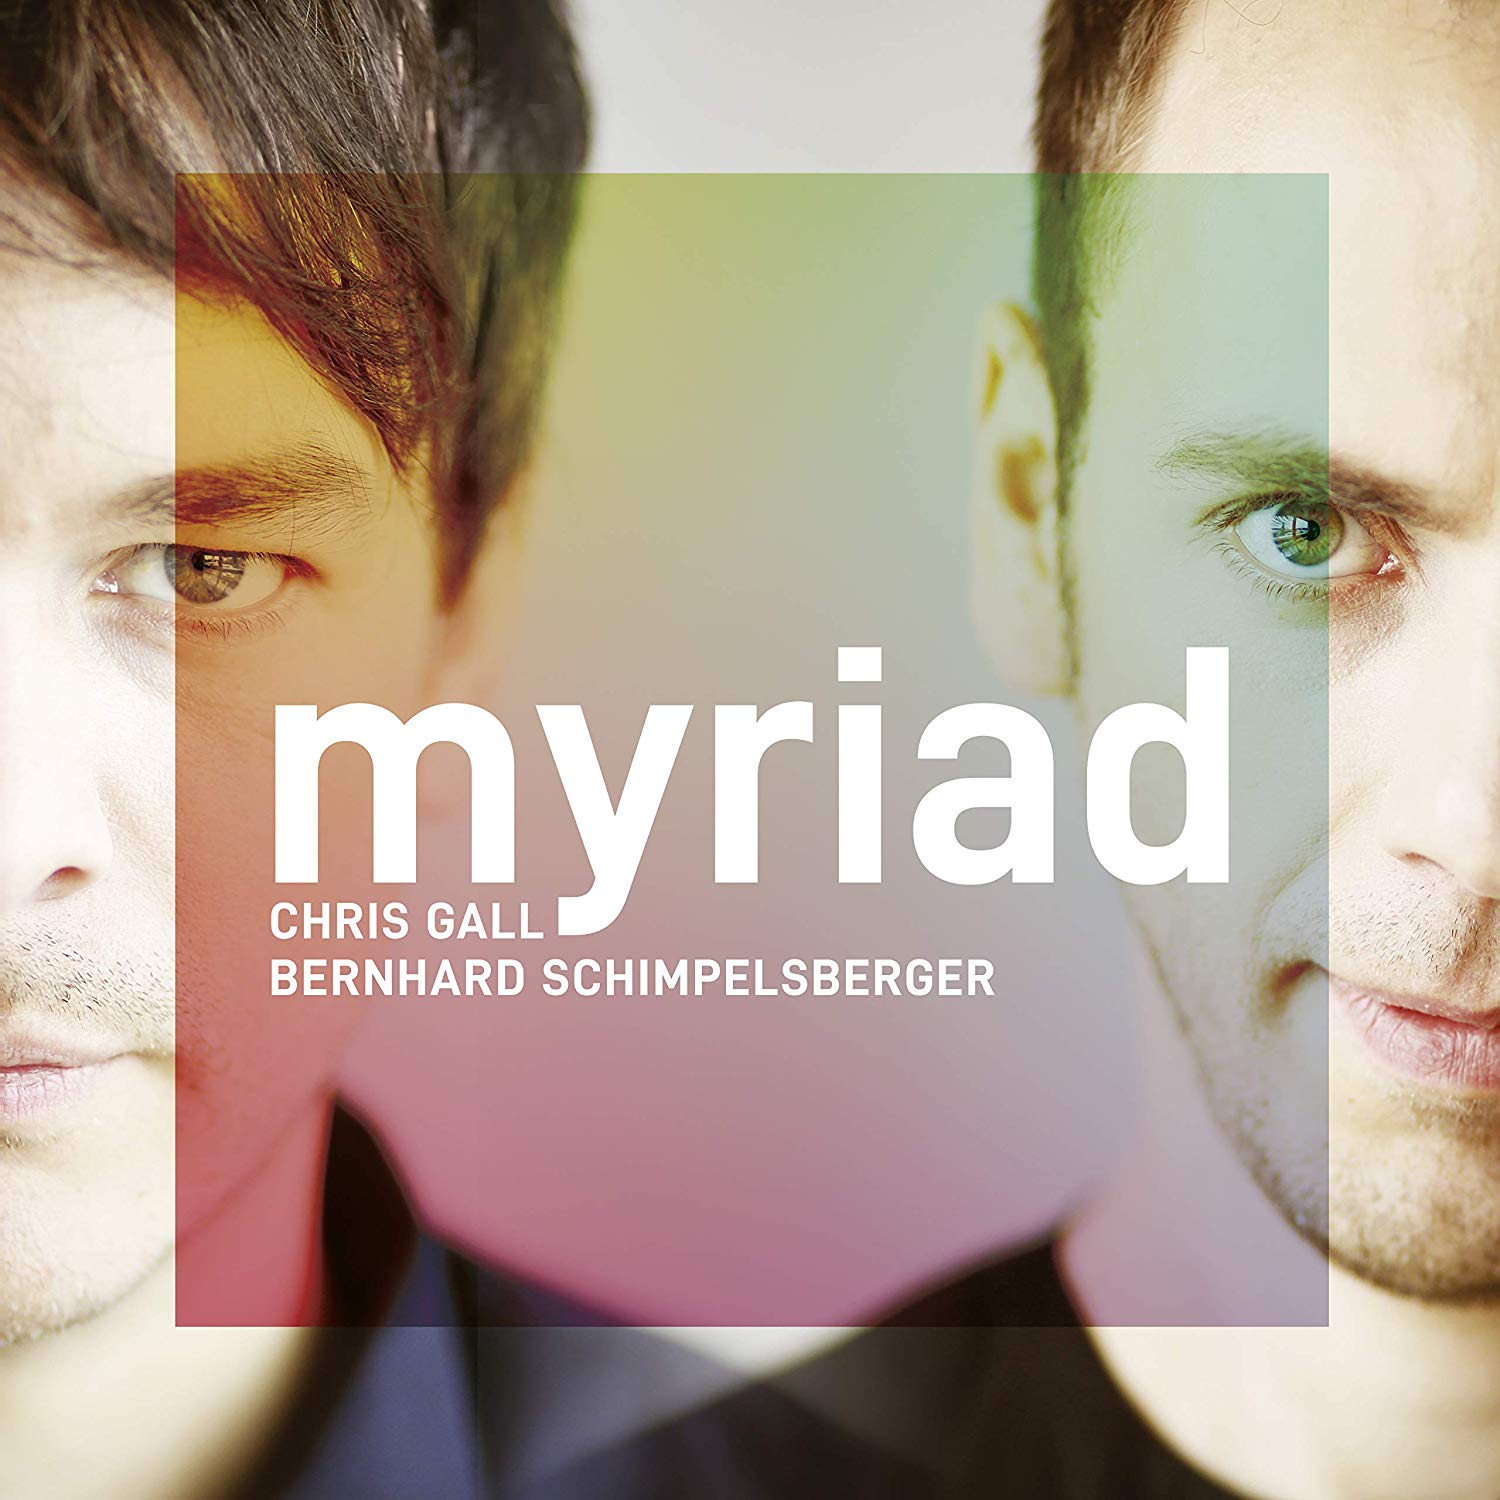 CHRIS GALL - Chris Gall's & Bernhard Schimpelsberger : Myriad cover 